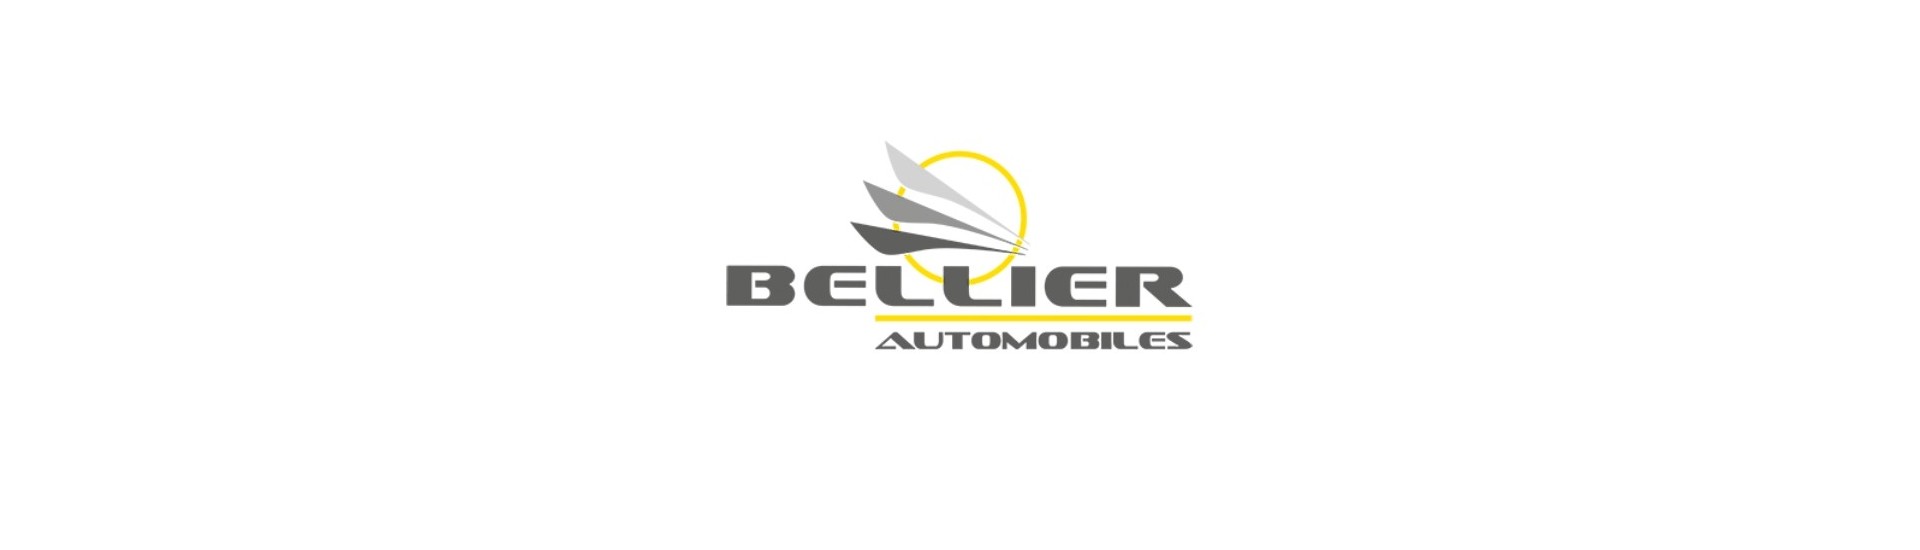 Logo ja liima parhaalla hinnalla ilman lupaa Bellier